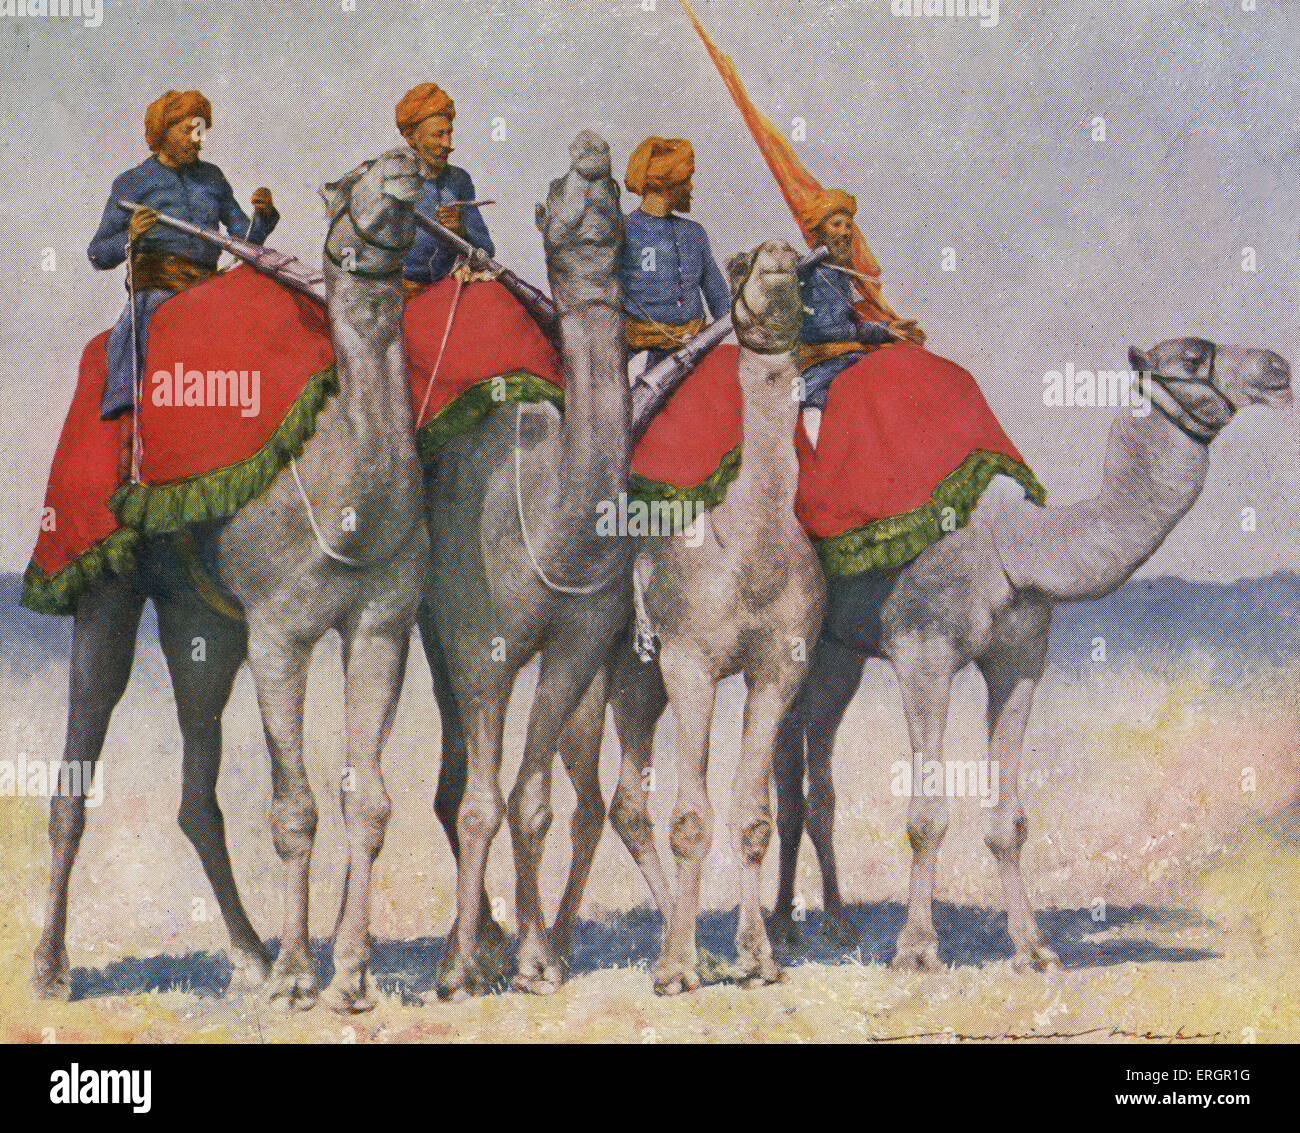 Cavalerie chameau / Camelry de Alwar, Inde. Des soldats portant un uniforme bleu de vestes sans col et turbans orange au sommet Banque D'Images